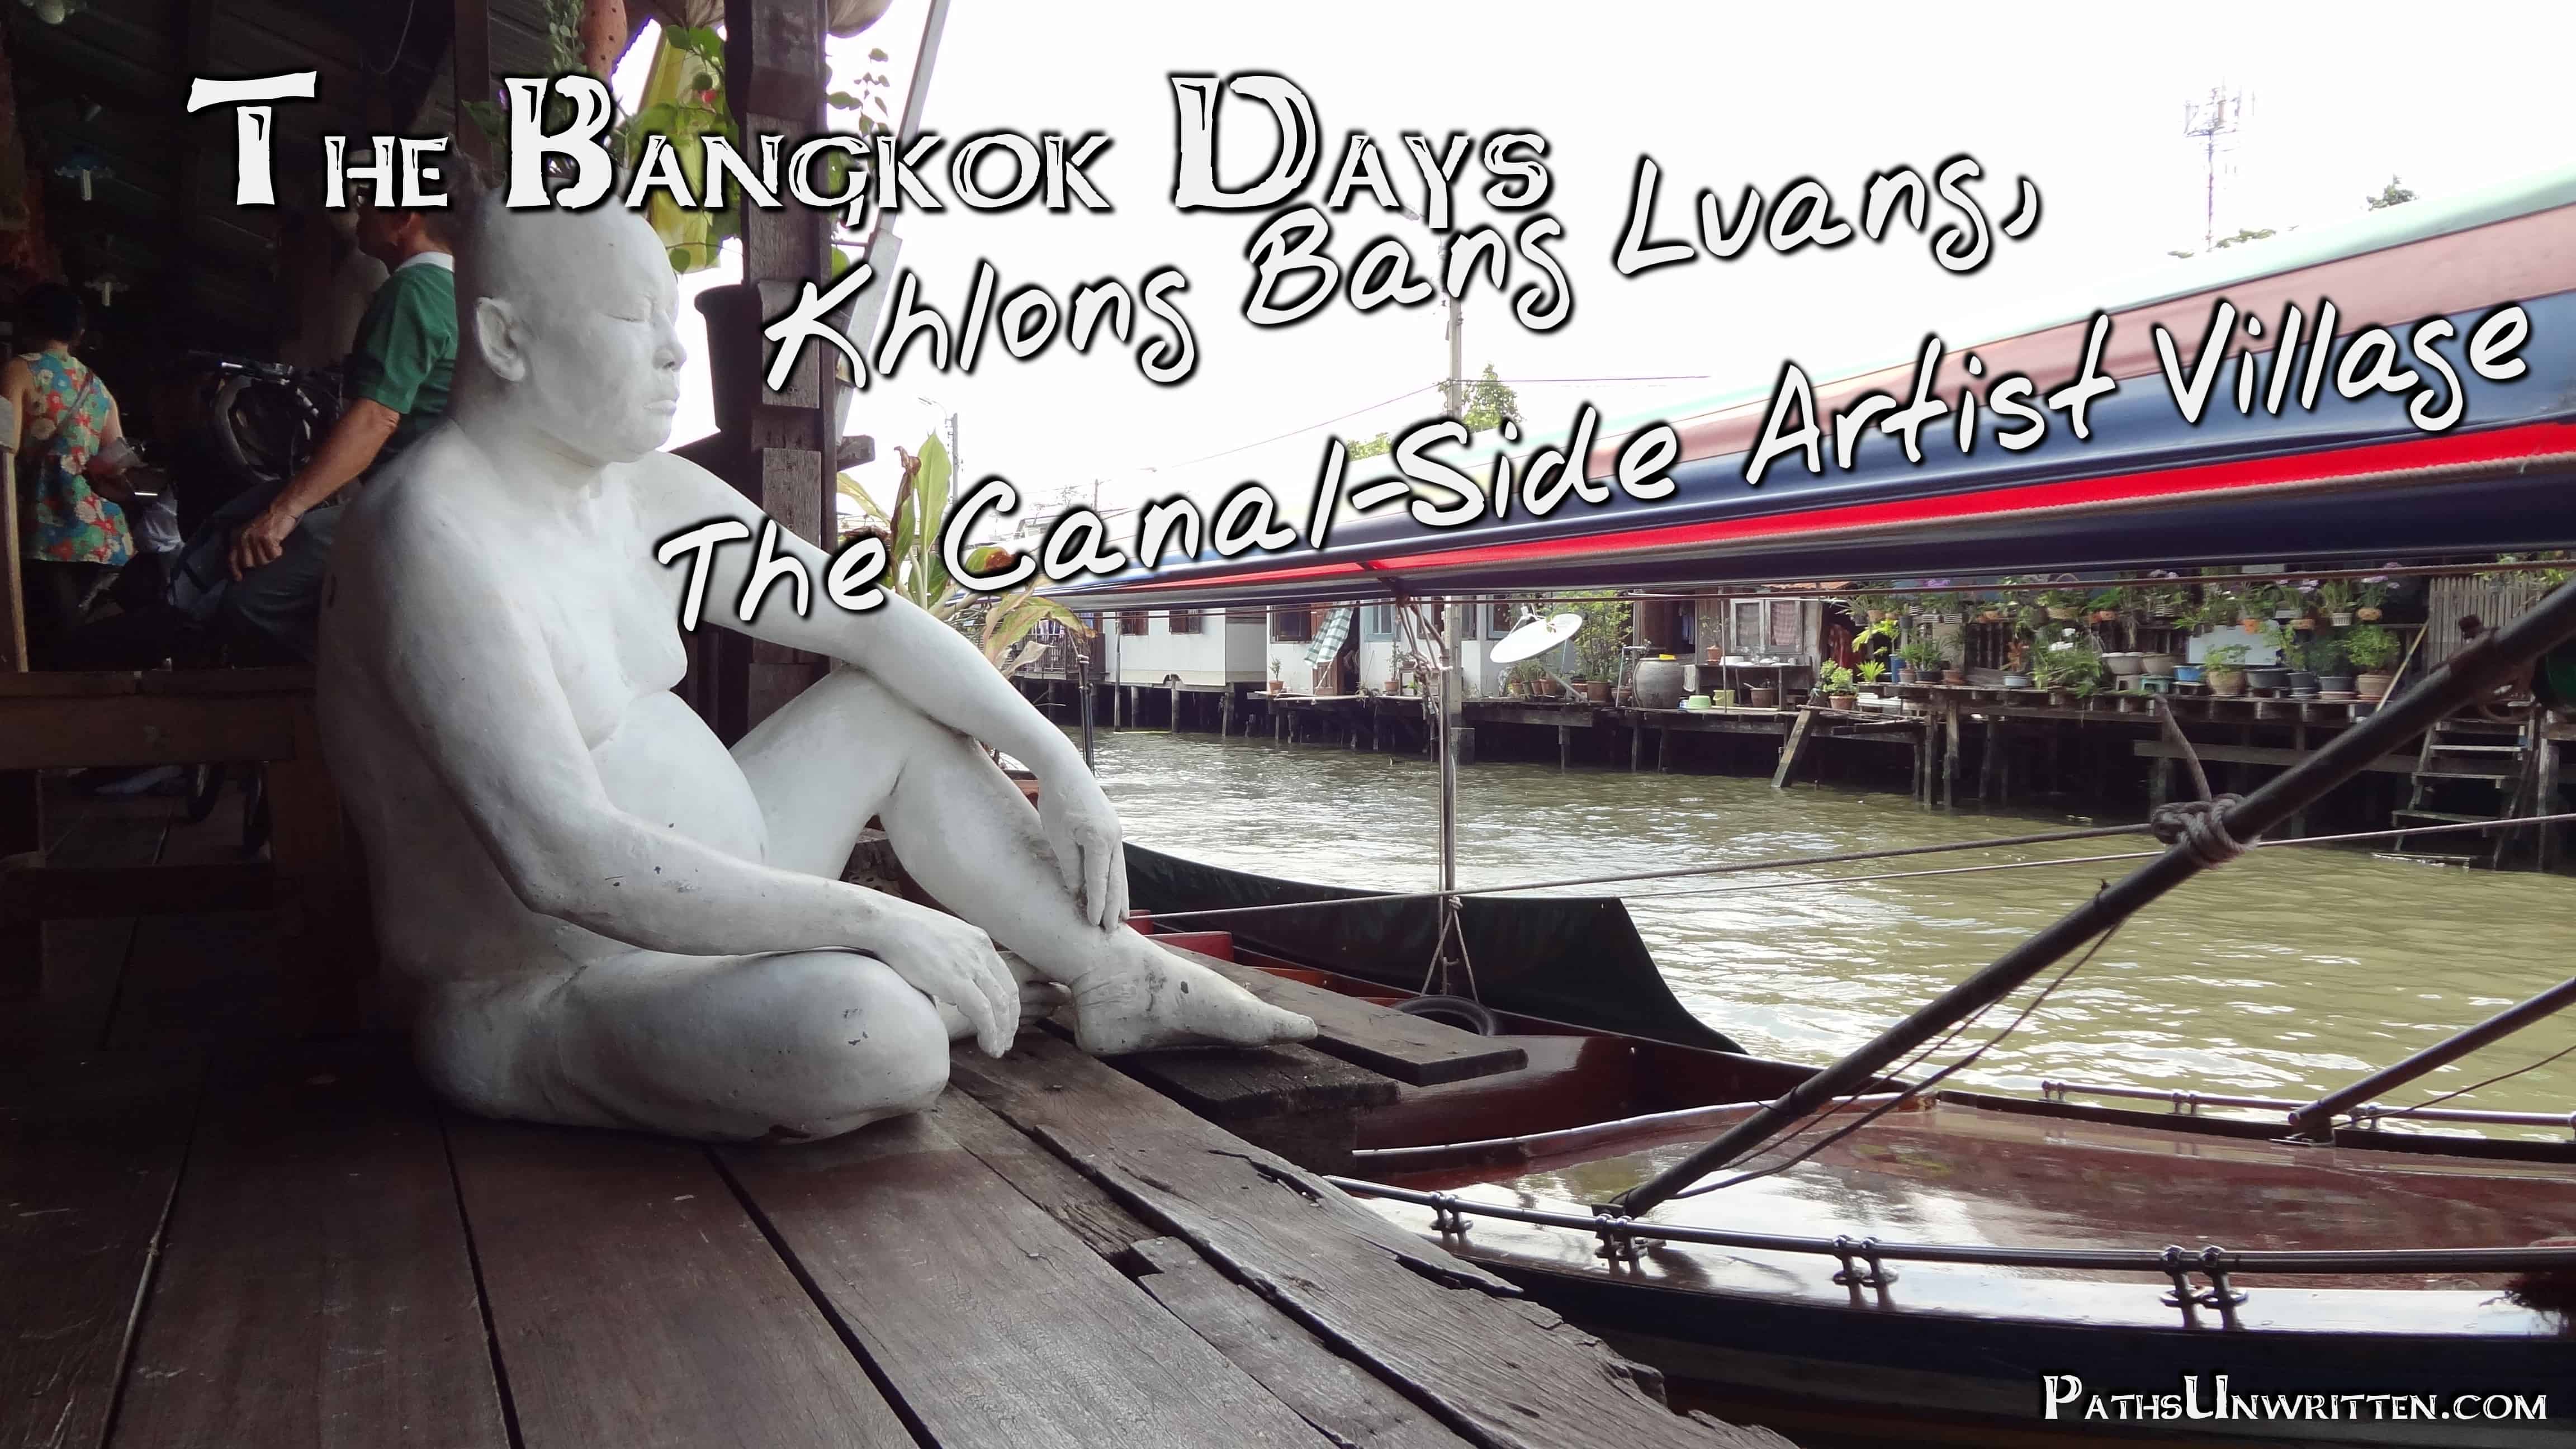 The Bangkok Days: Khlong Bang Luang, the Canal-Side Artist Village